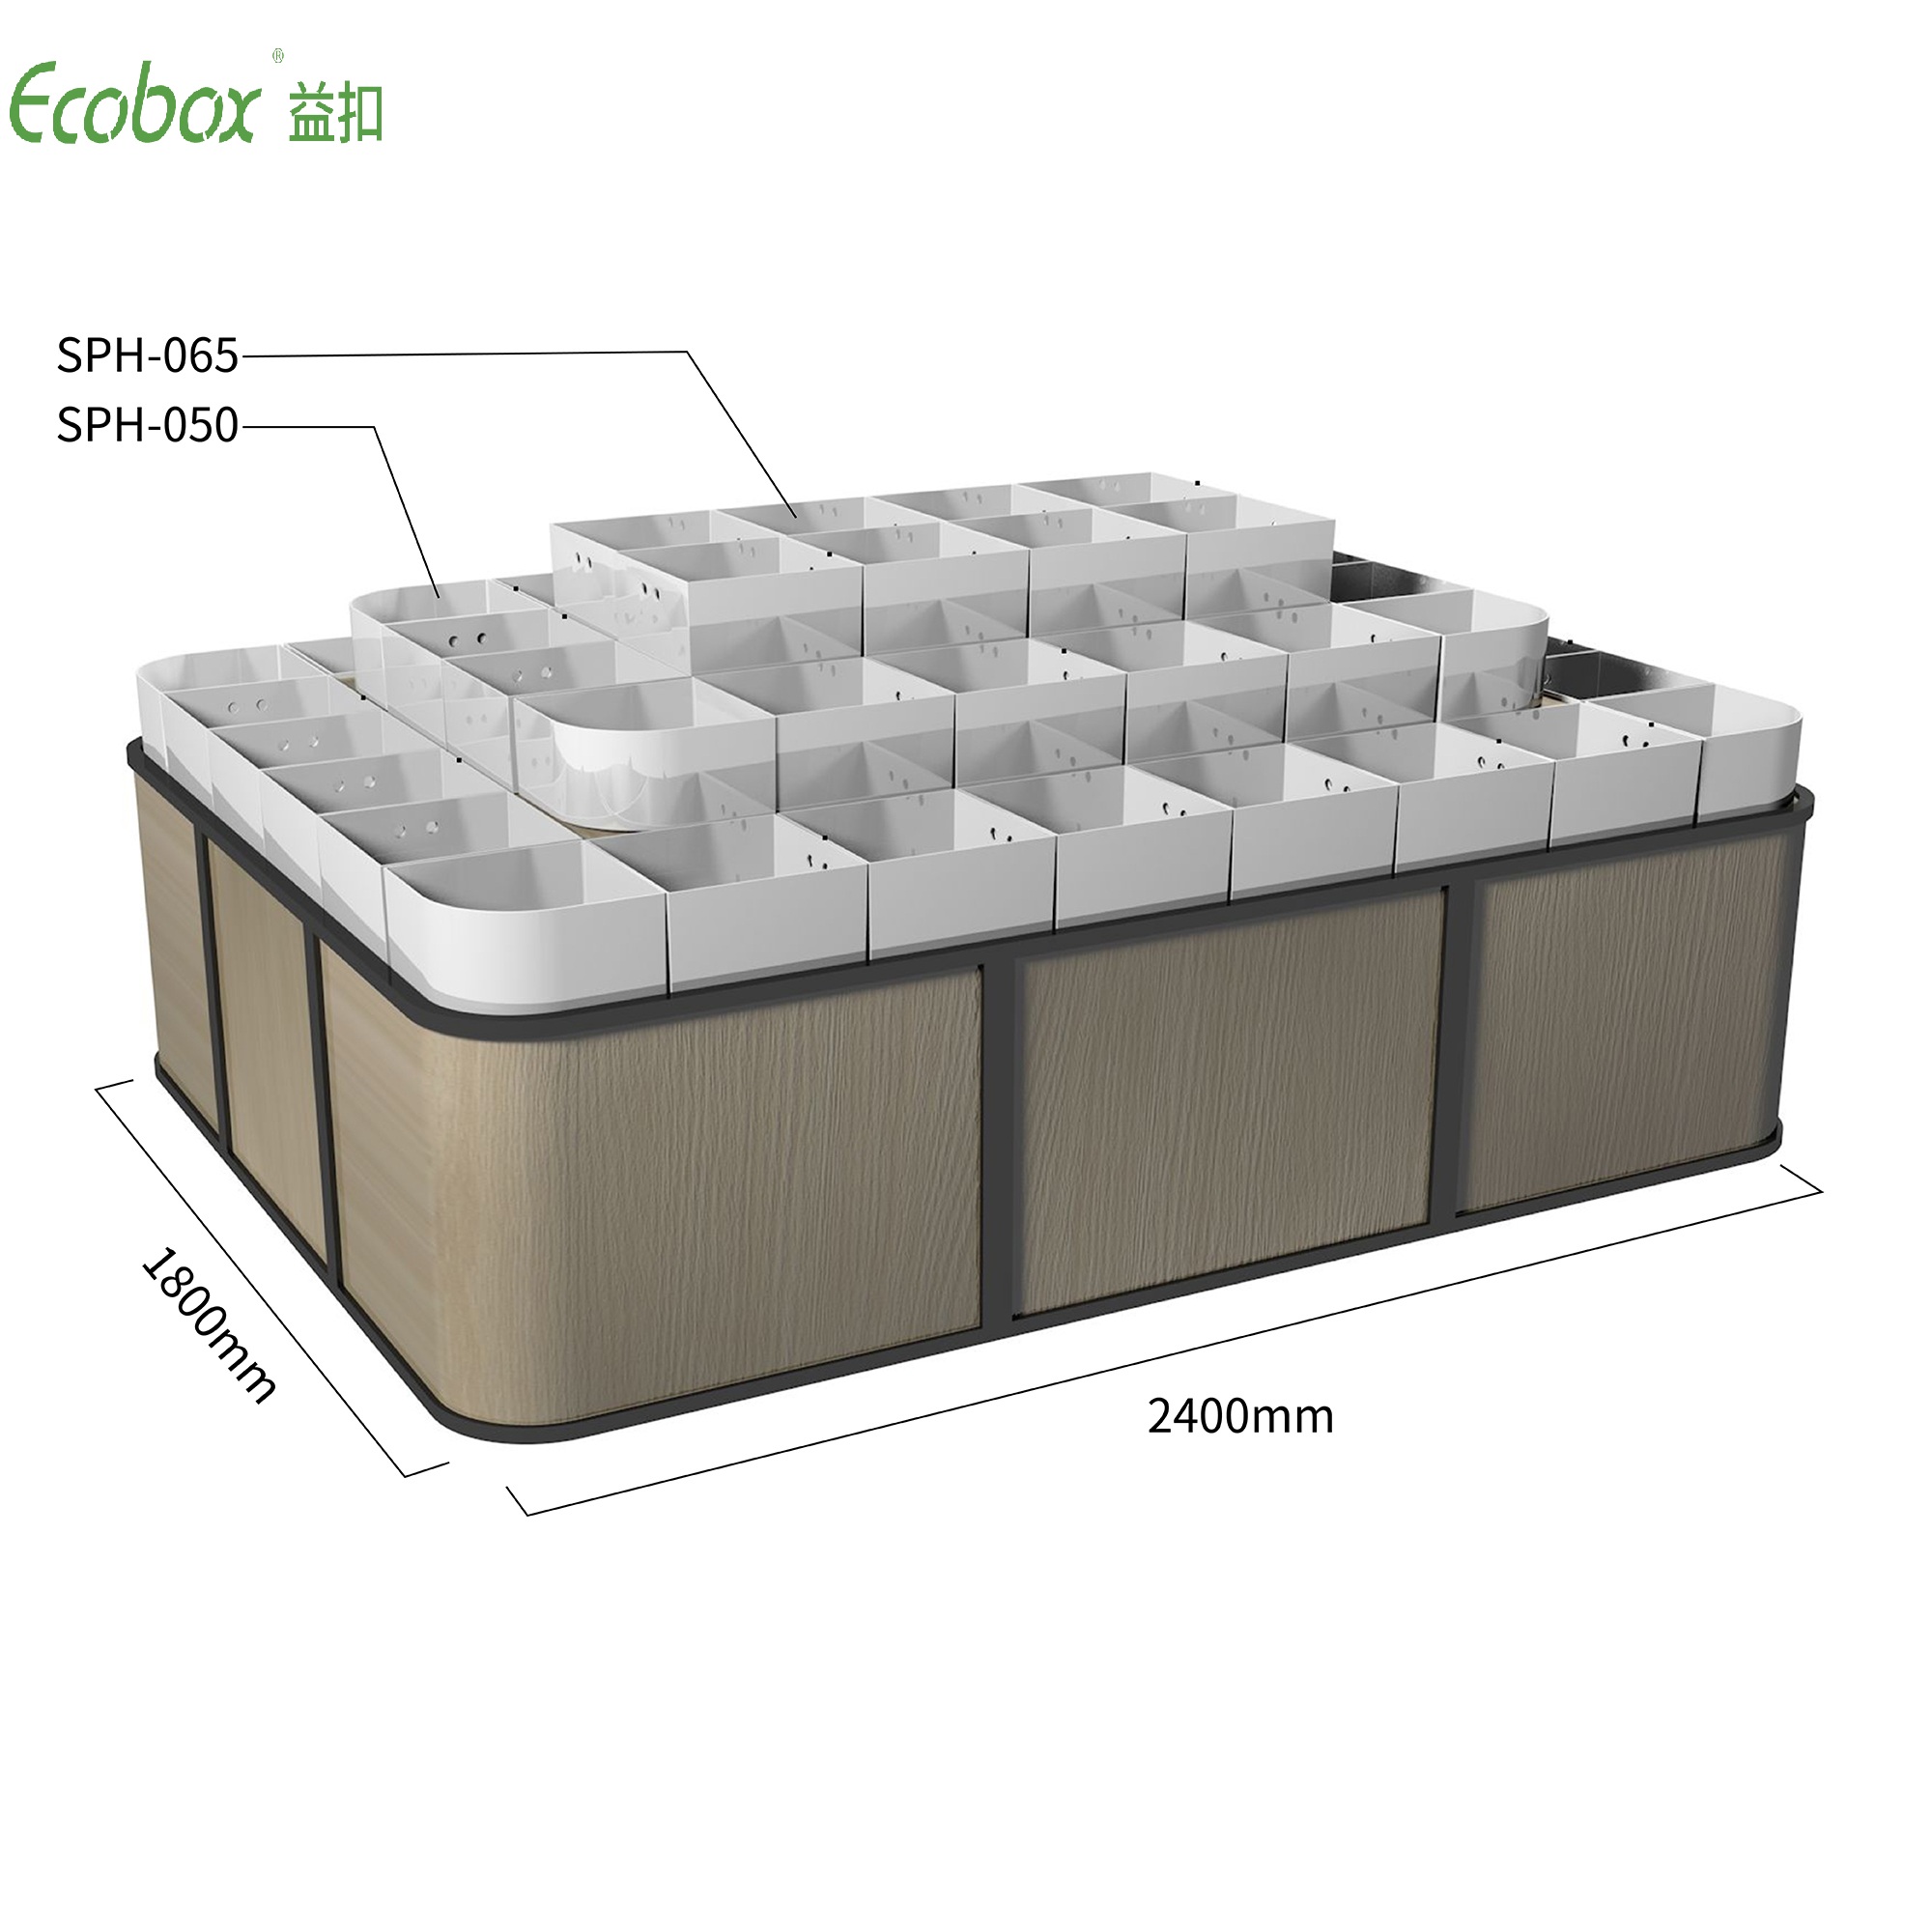 Ecobox G004-Serie Regal mit Ecobox-Großbehältern für Supermarkt-Großlebensmitteldisplays